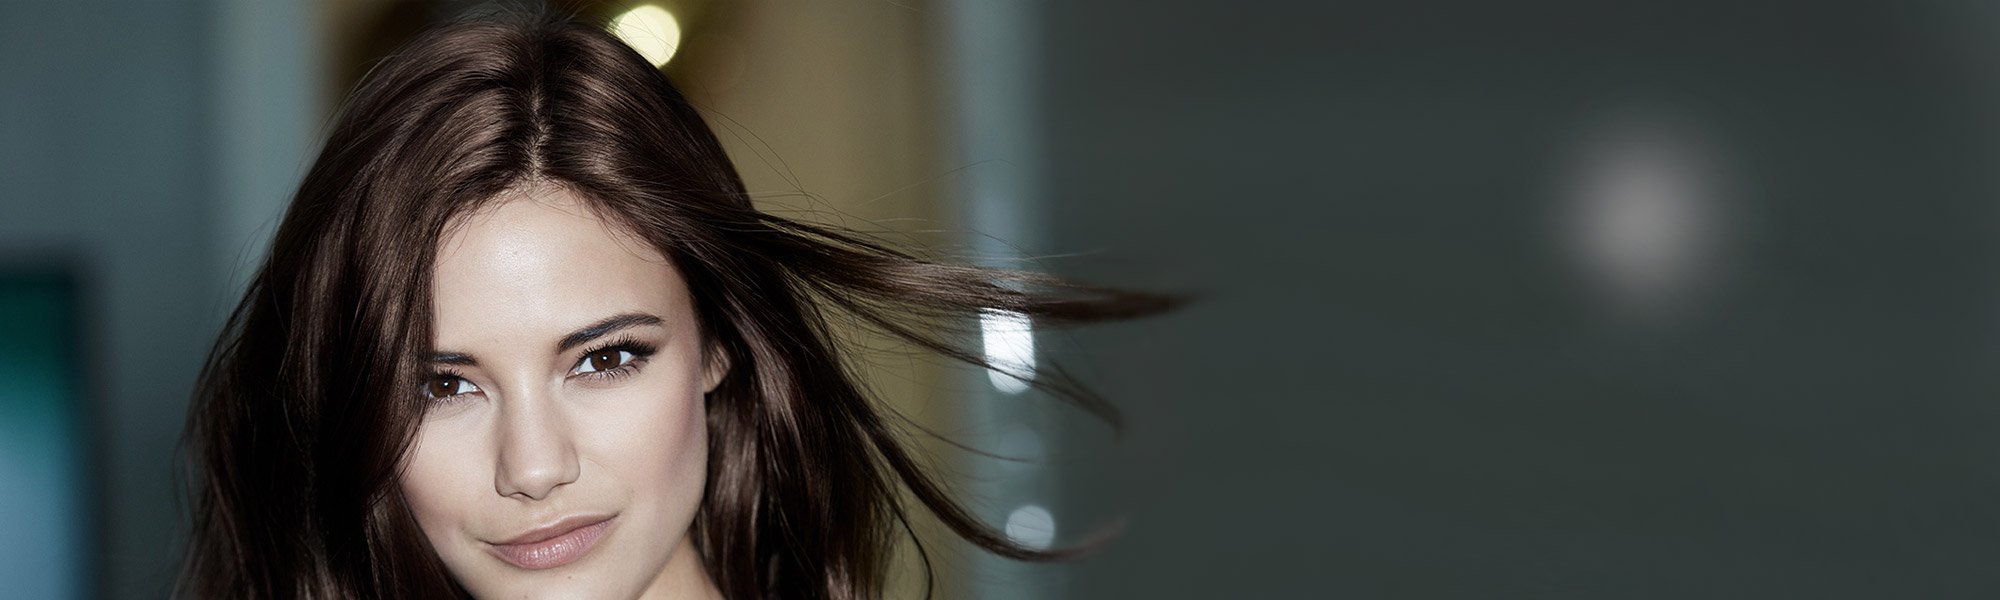 The Wet Look For Long Hair  L'Oréal Professionnel Australia & NZ